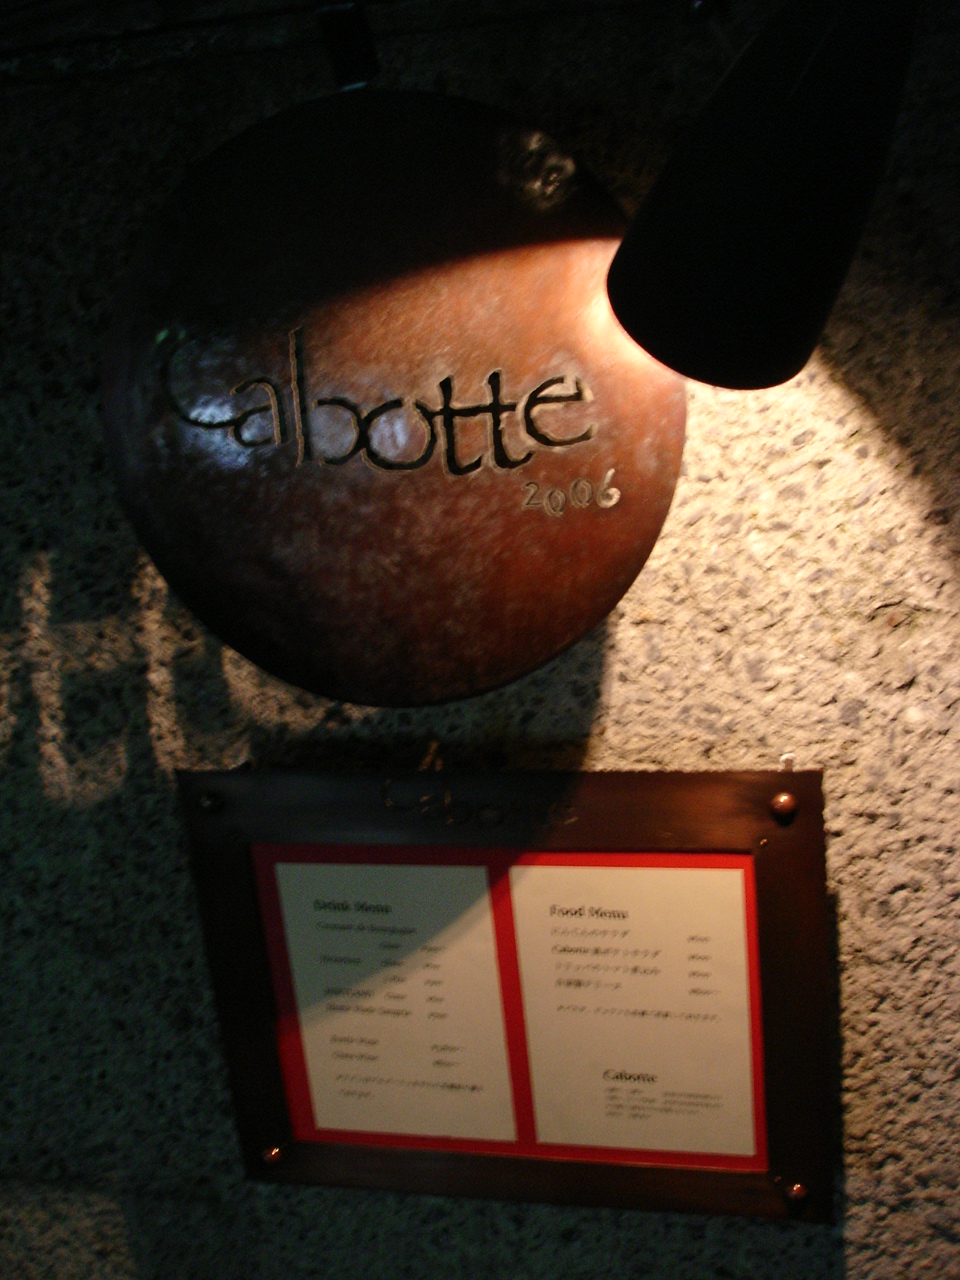 Shibuya Wine Bar Cabotte